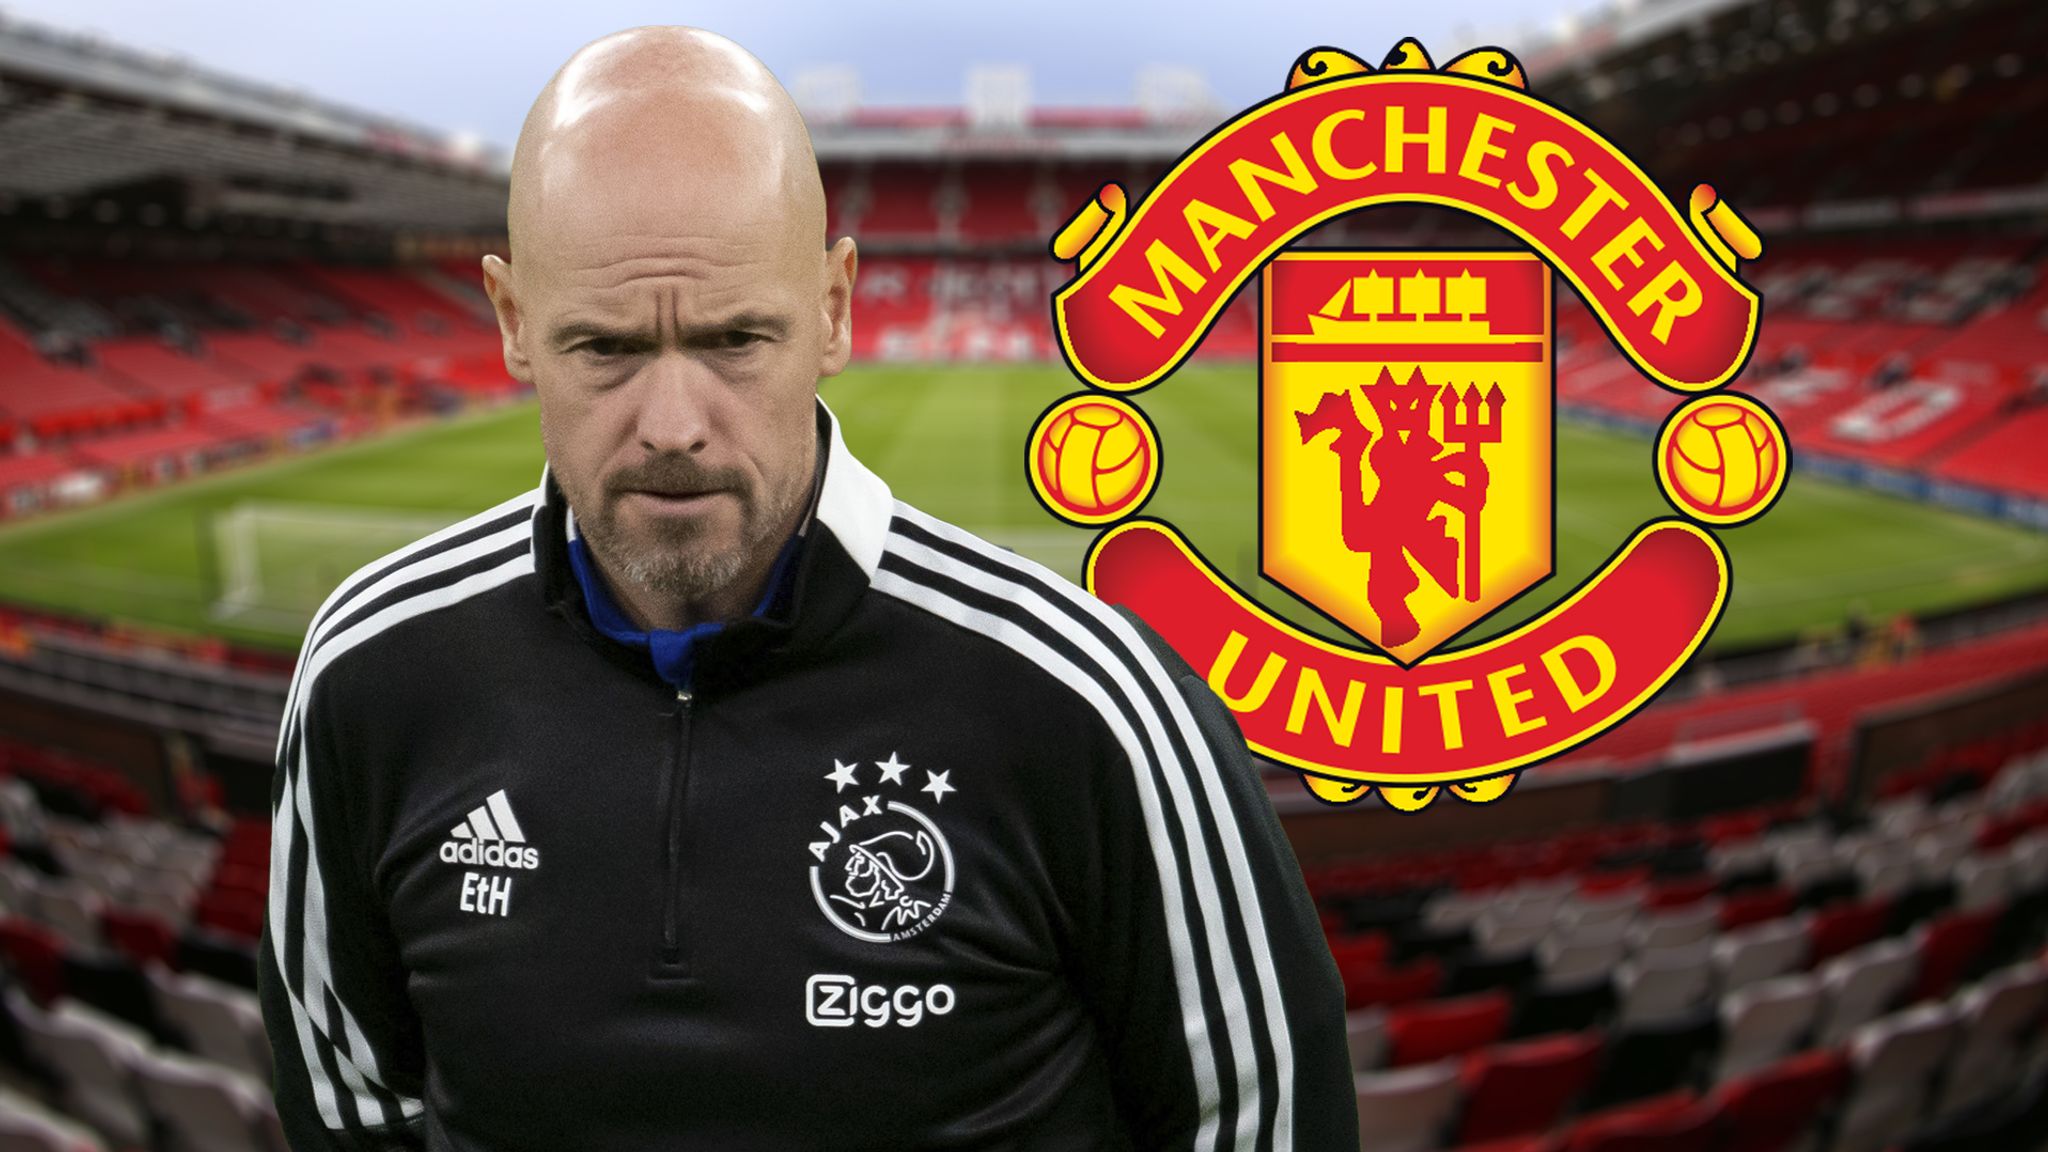 Officiel : Manchester United annonce l’arrivée d’un nouvel entraîneur